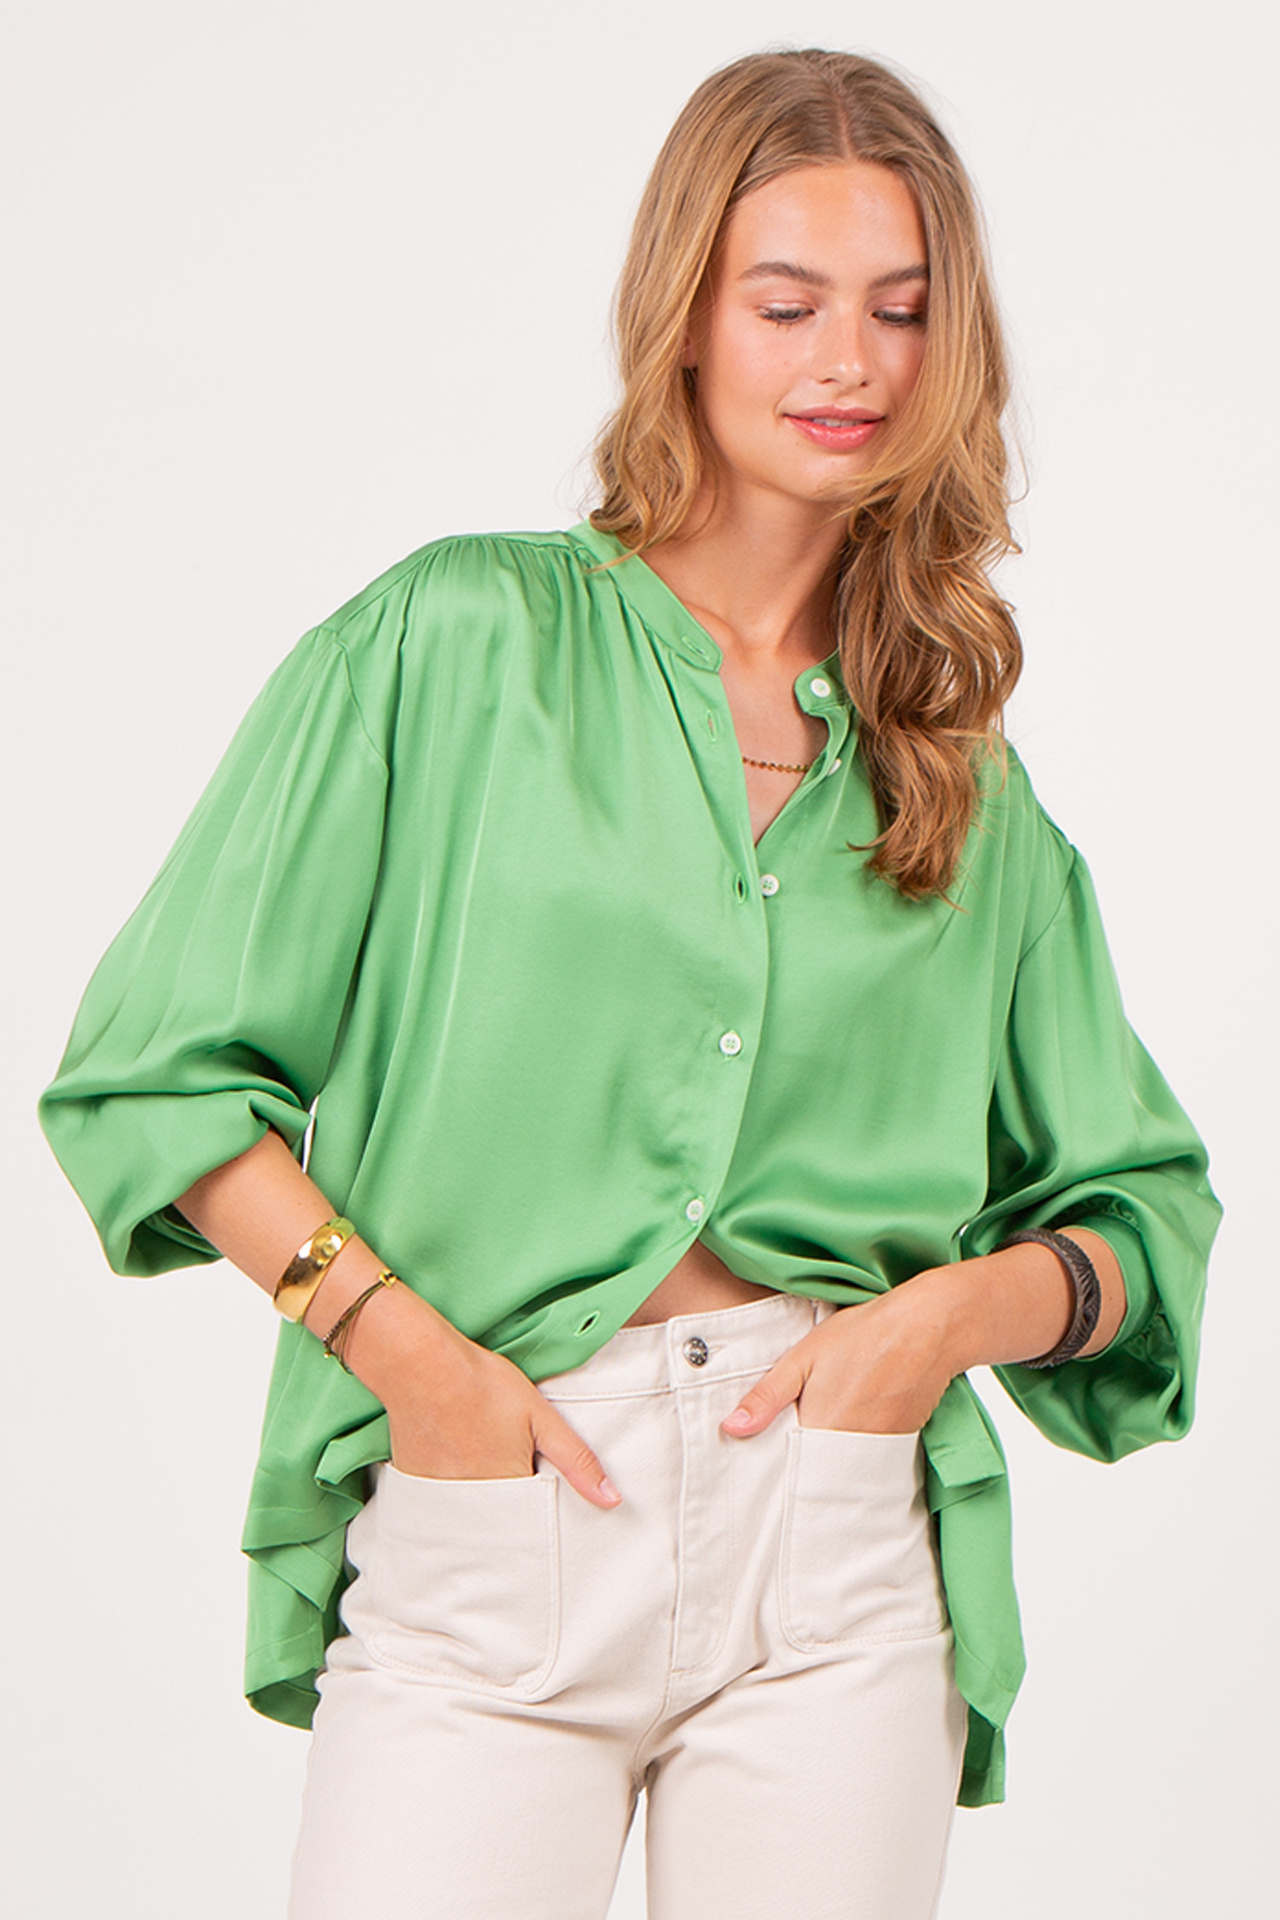 Brahir groene blouse - Vleeschouwer